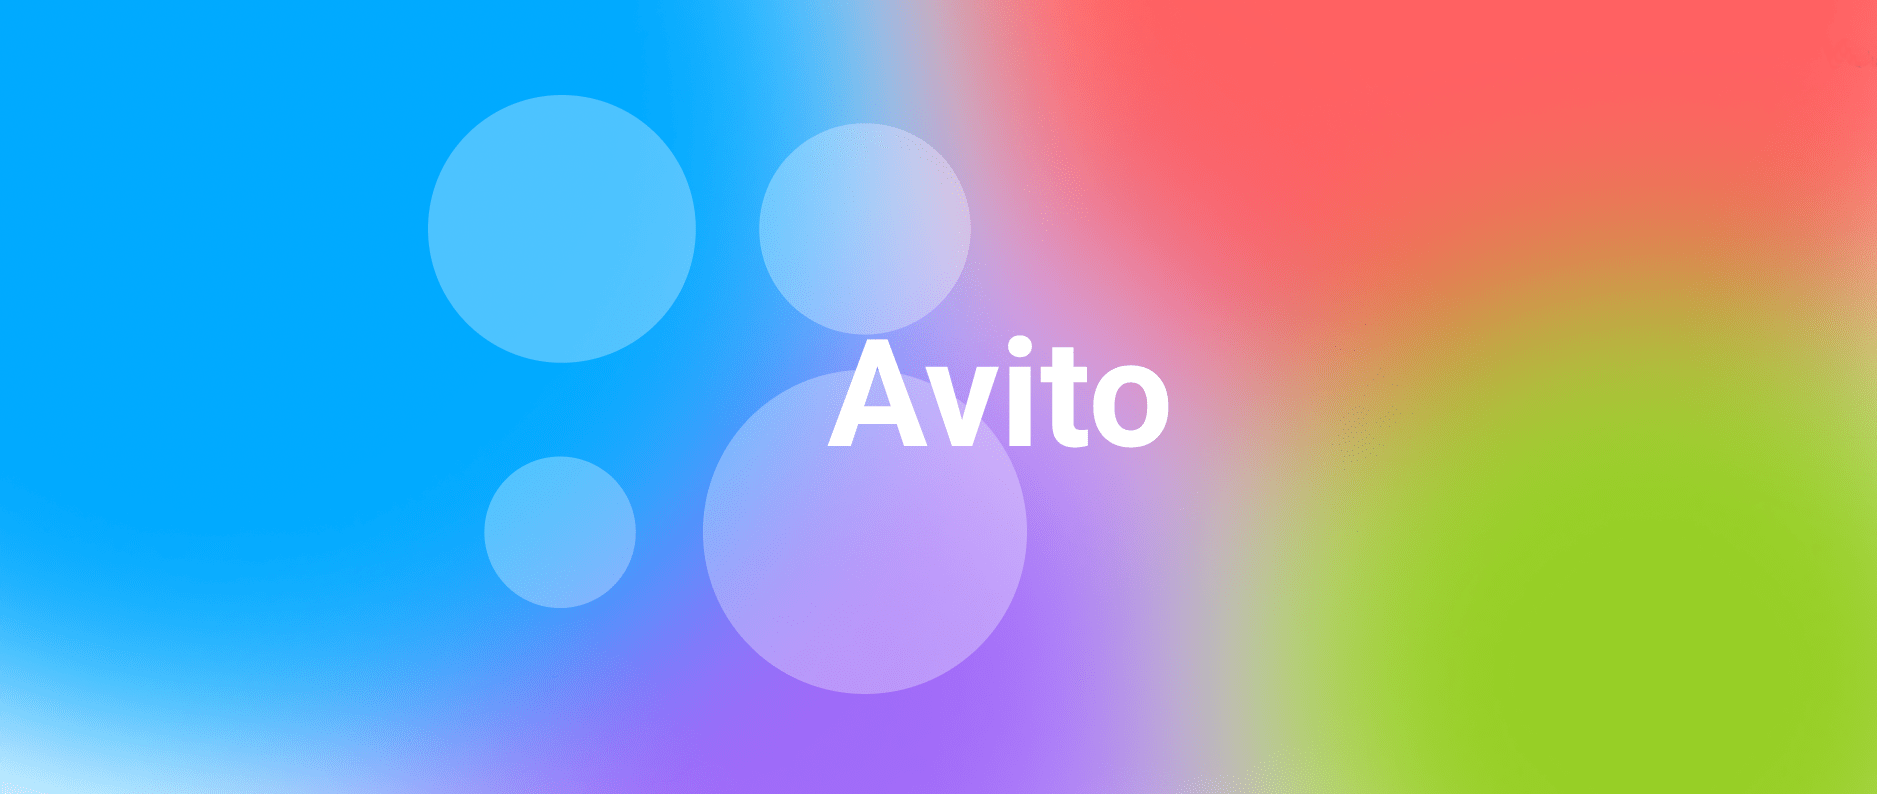 Кейс: Roi 100%+ на Avito с ремонта бытовой техники